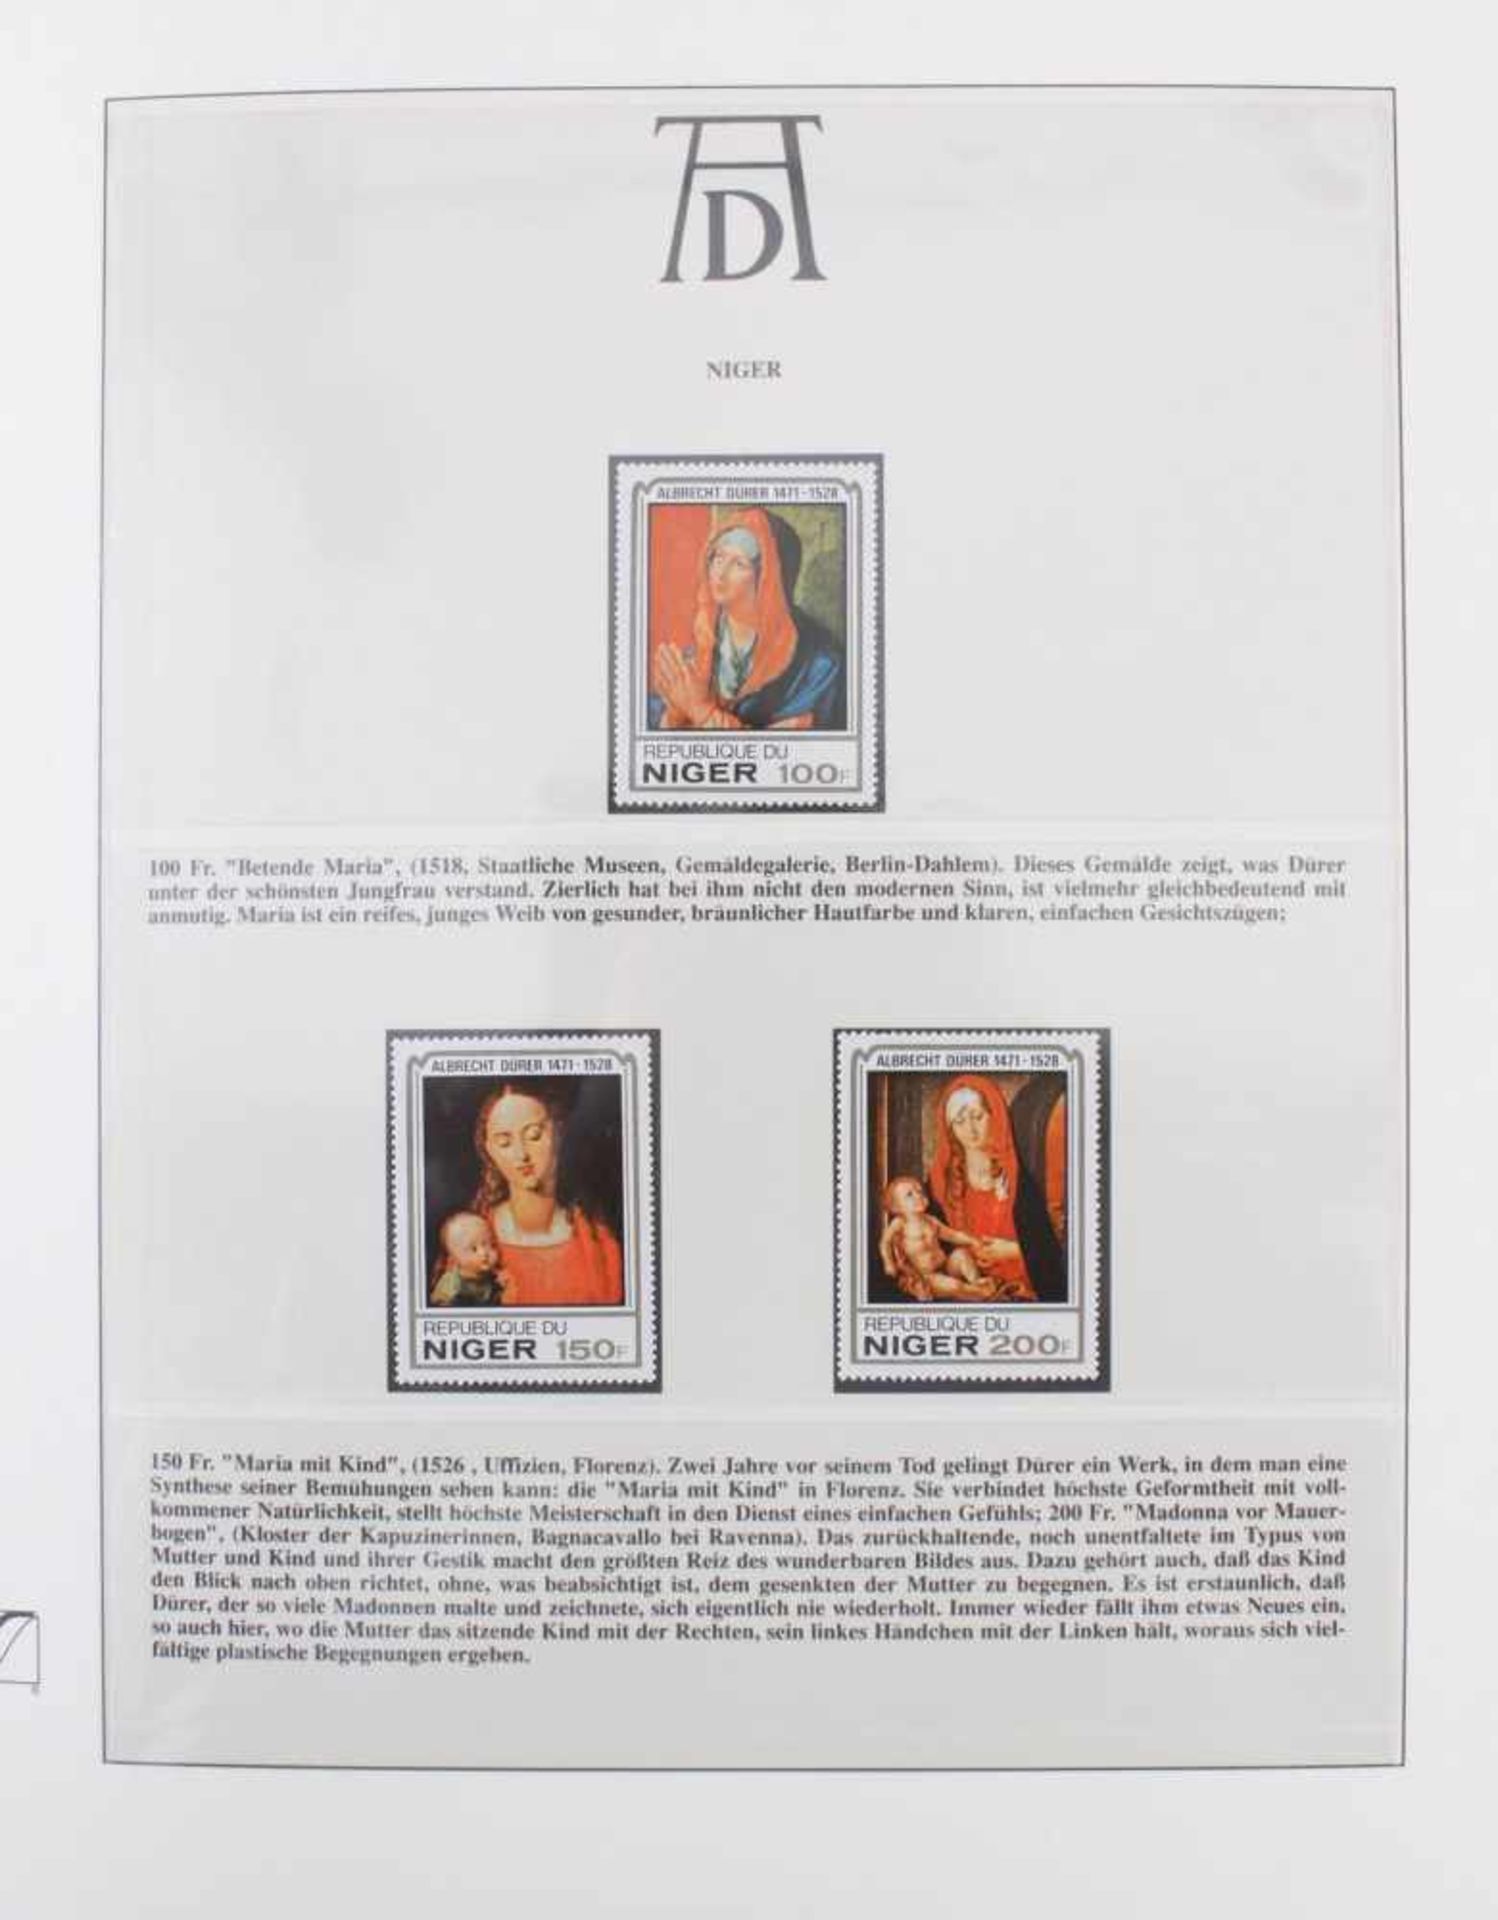 Motivsammlung Albrecht DürerEin Album aus Sieger-Abo. Über 50 Seiten.- - -20.00 % buyer's premium on - Image 2 of 3